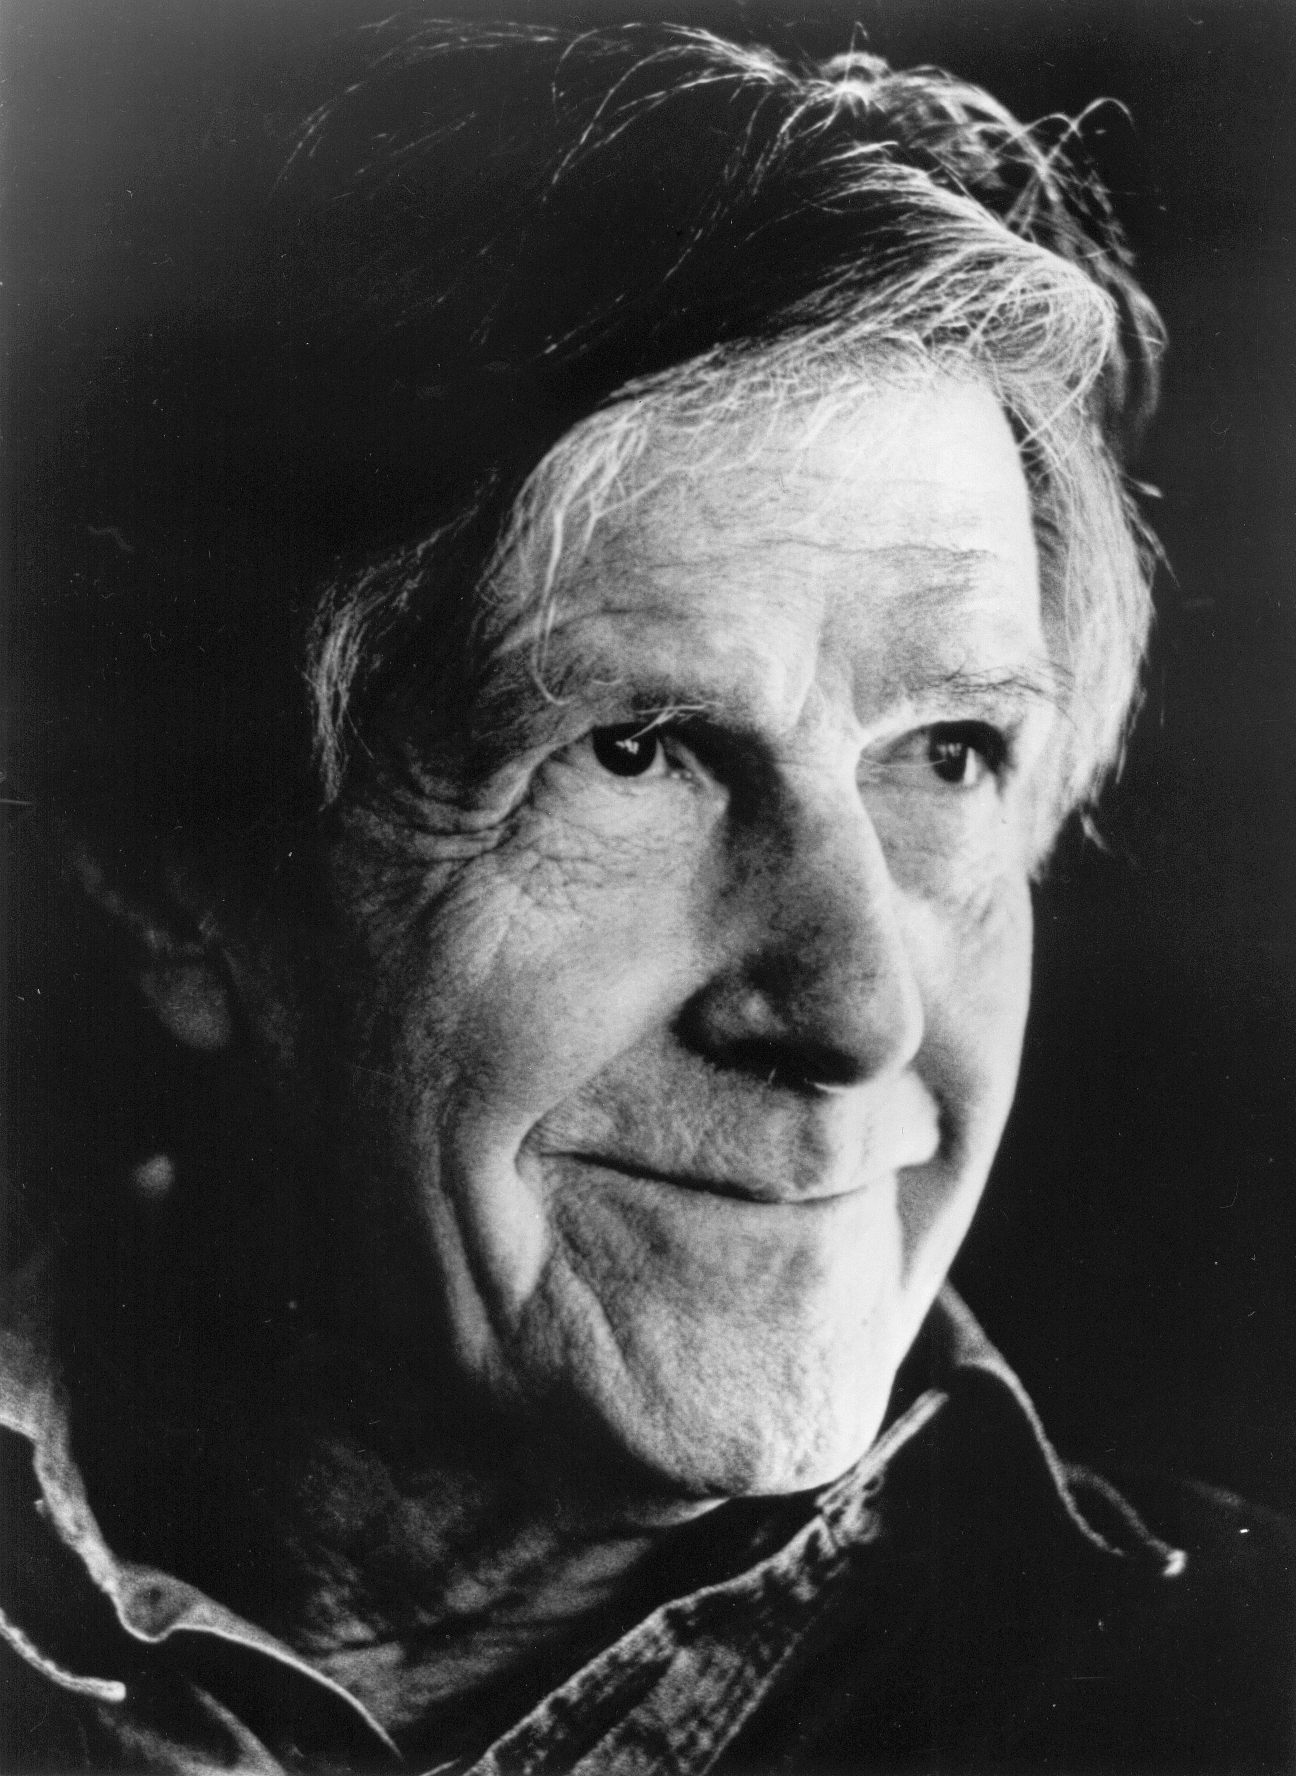 Композитор, художник, поэт John Cage